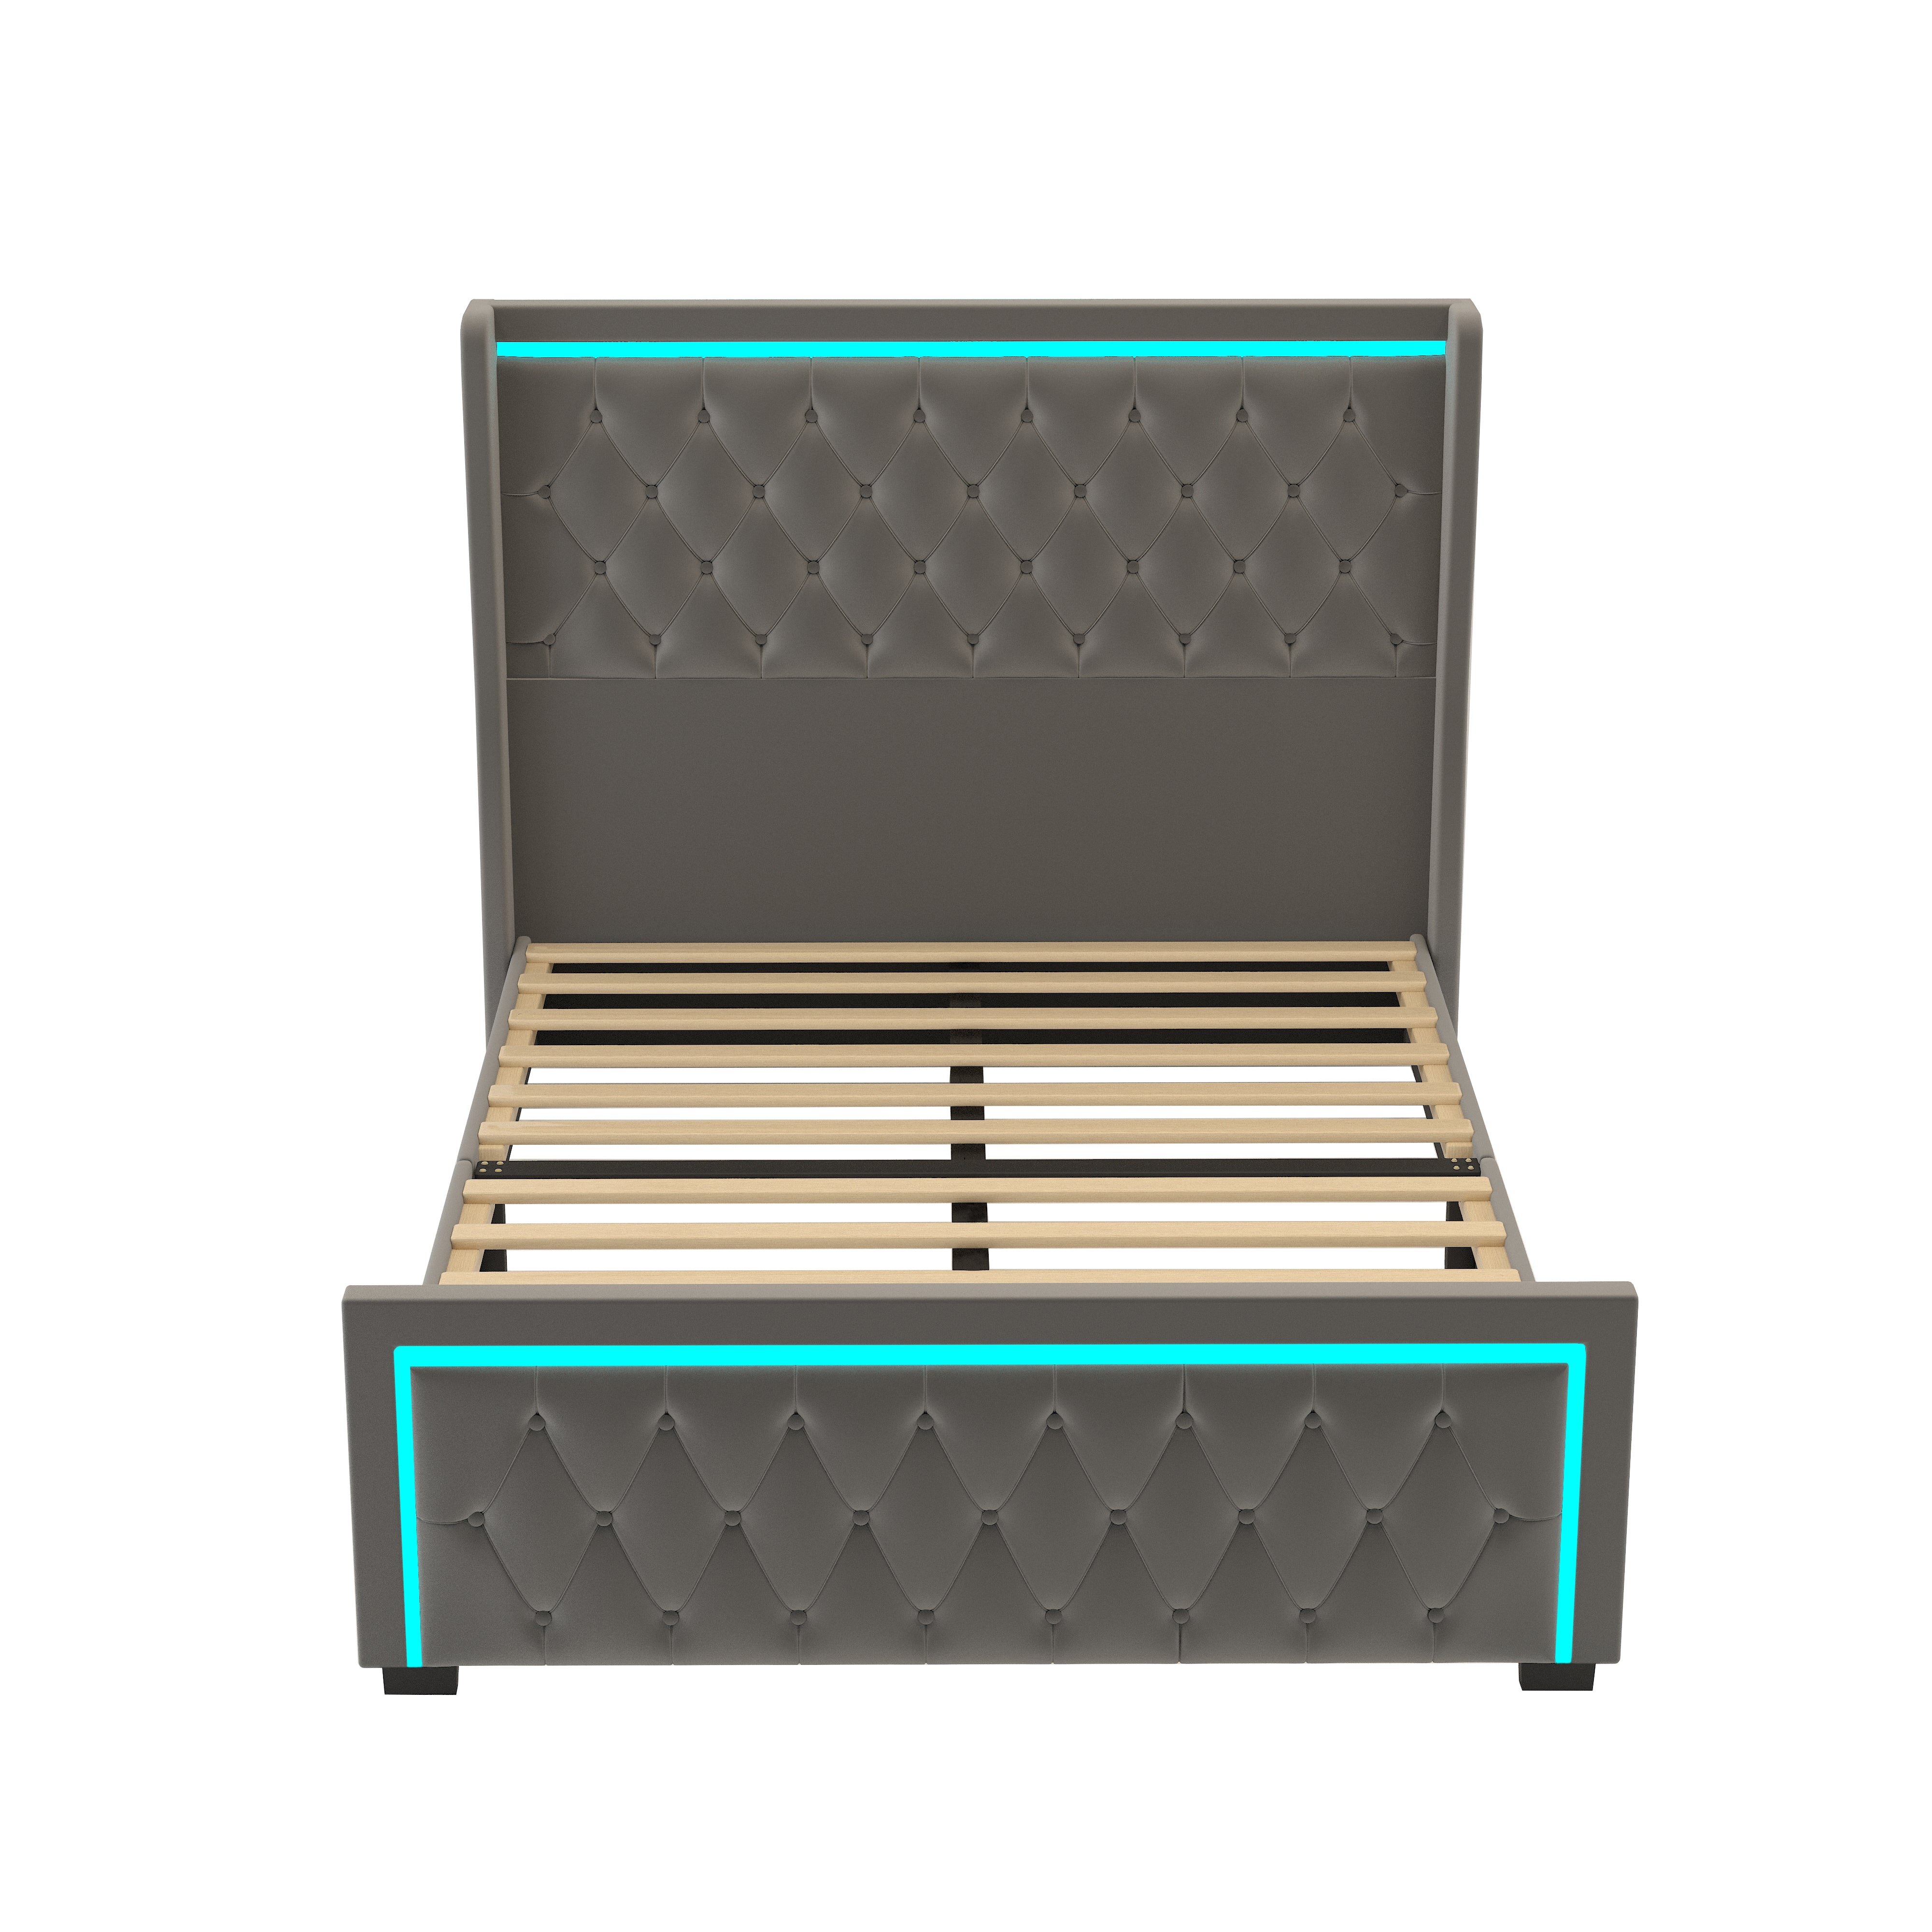 Bellemave® Velvet Upholstered Platform Bed with LED Light High Headboard, with Deep Tufted Buttons Bellemave®